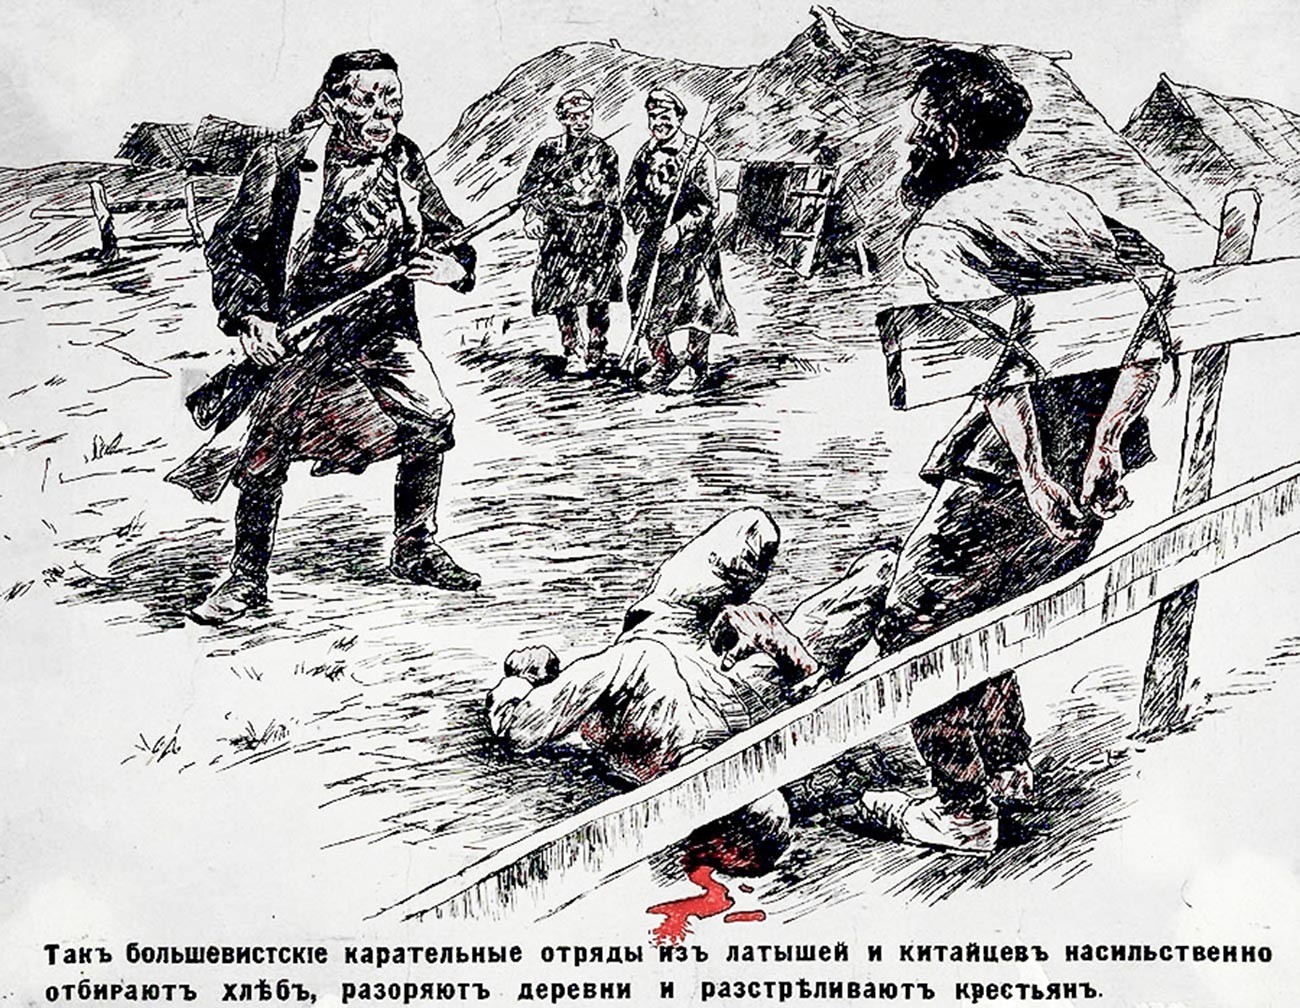 Cartaz de propaganda do movimento branco representando soldados vermelhos chineses e letões